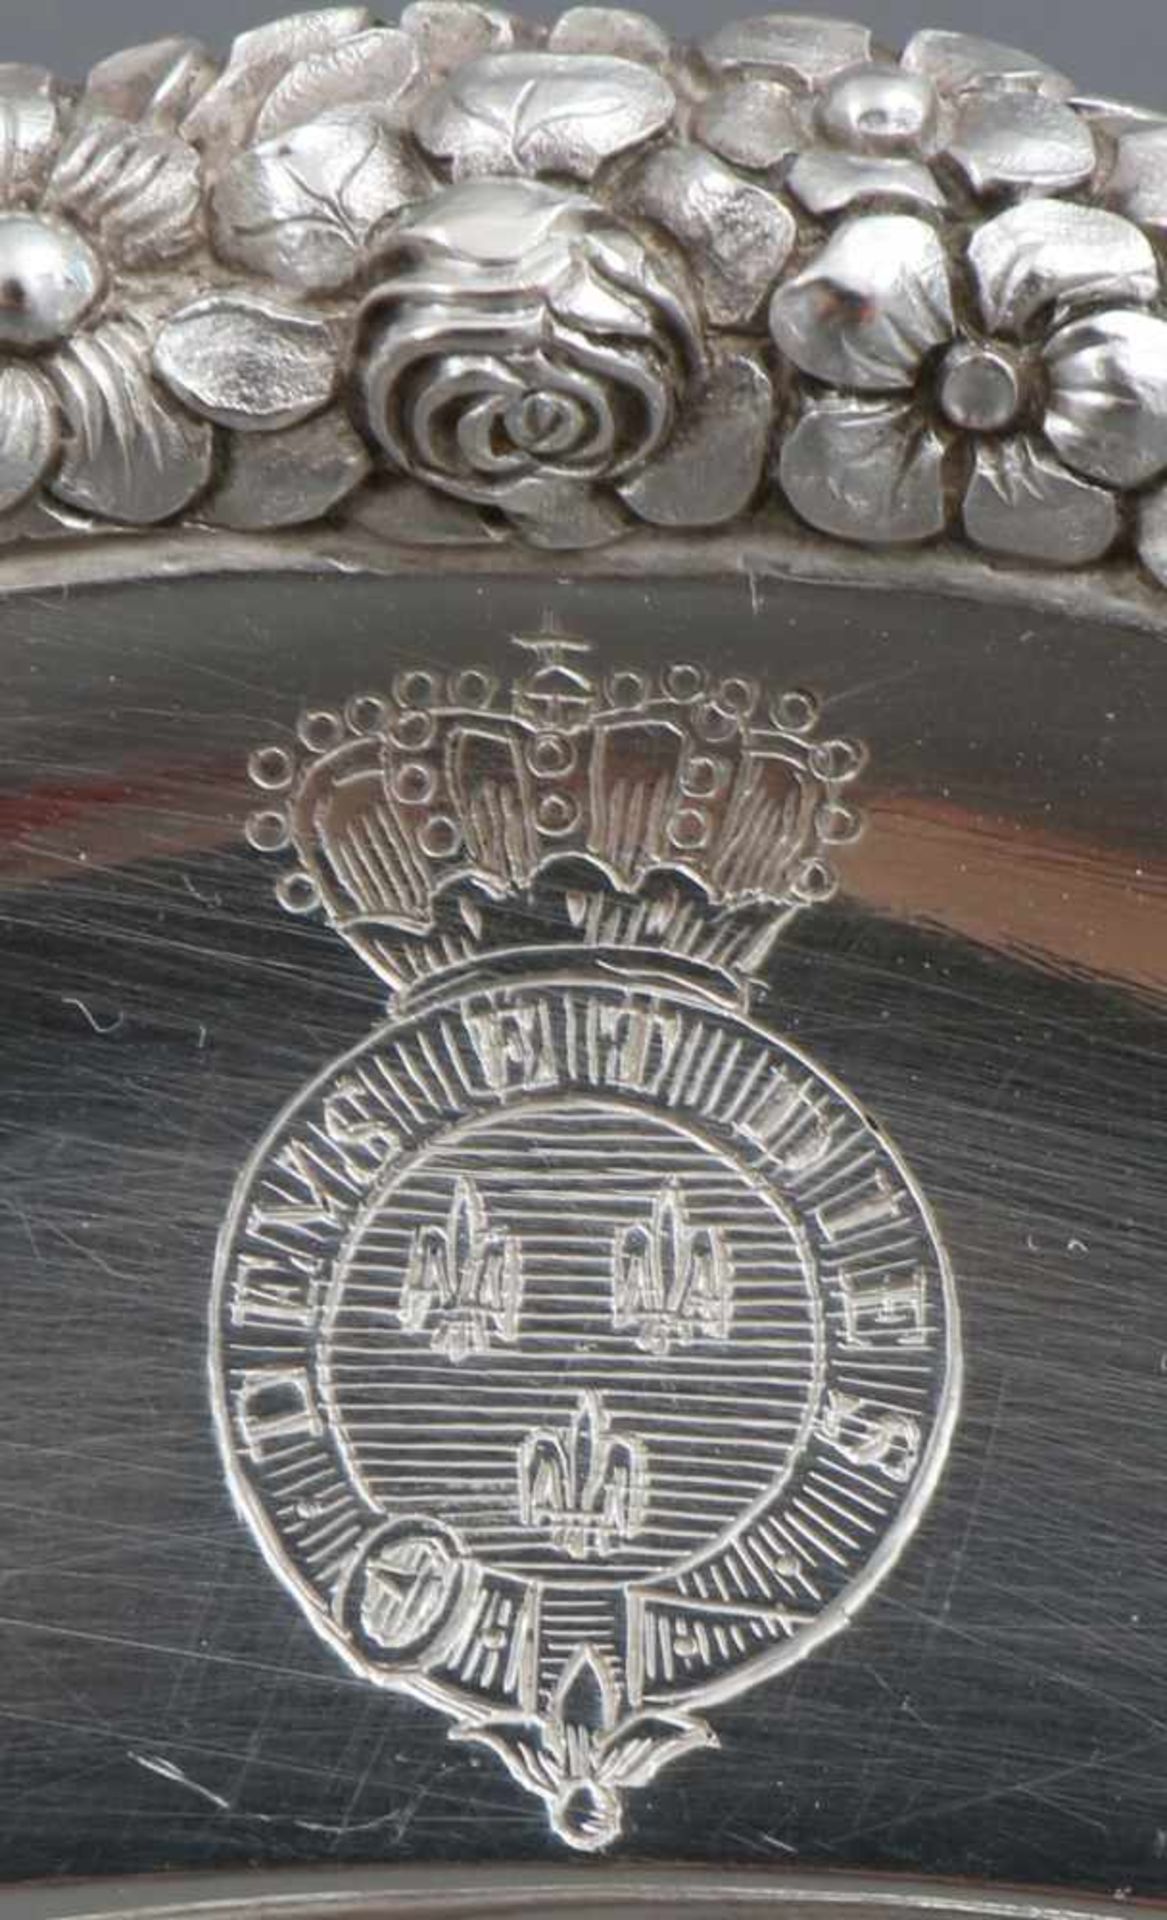 2 Platzteller aus dem Besitz des französischen Königshausesfranzösisches Silber, Meisterpunze ¨L. - Image 2 of 3